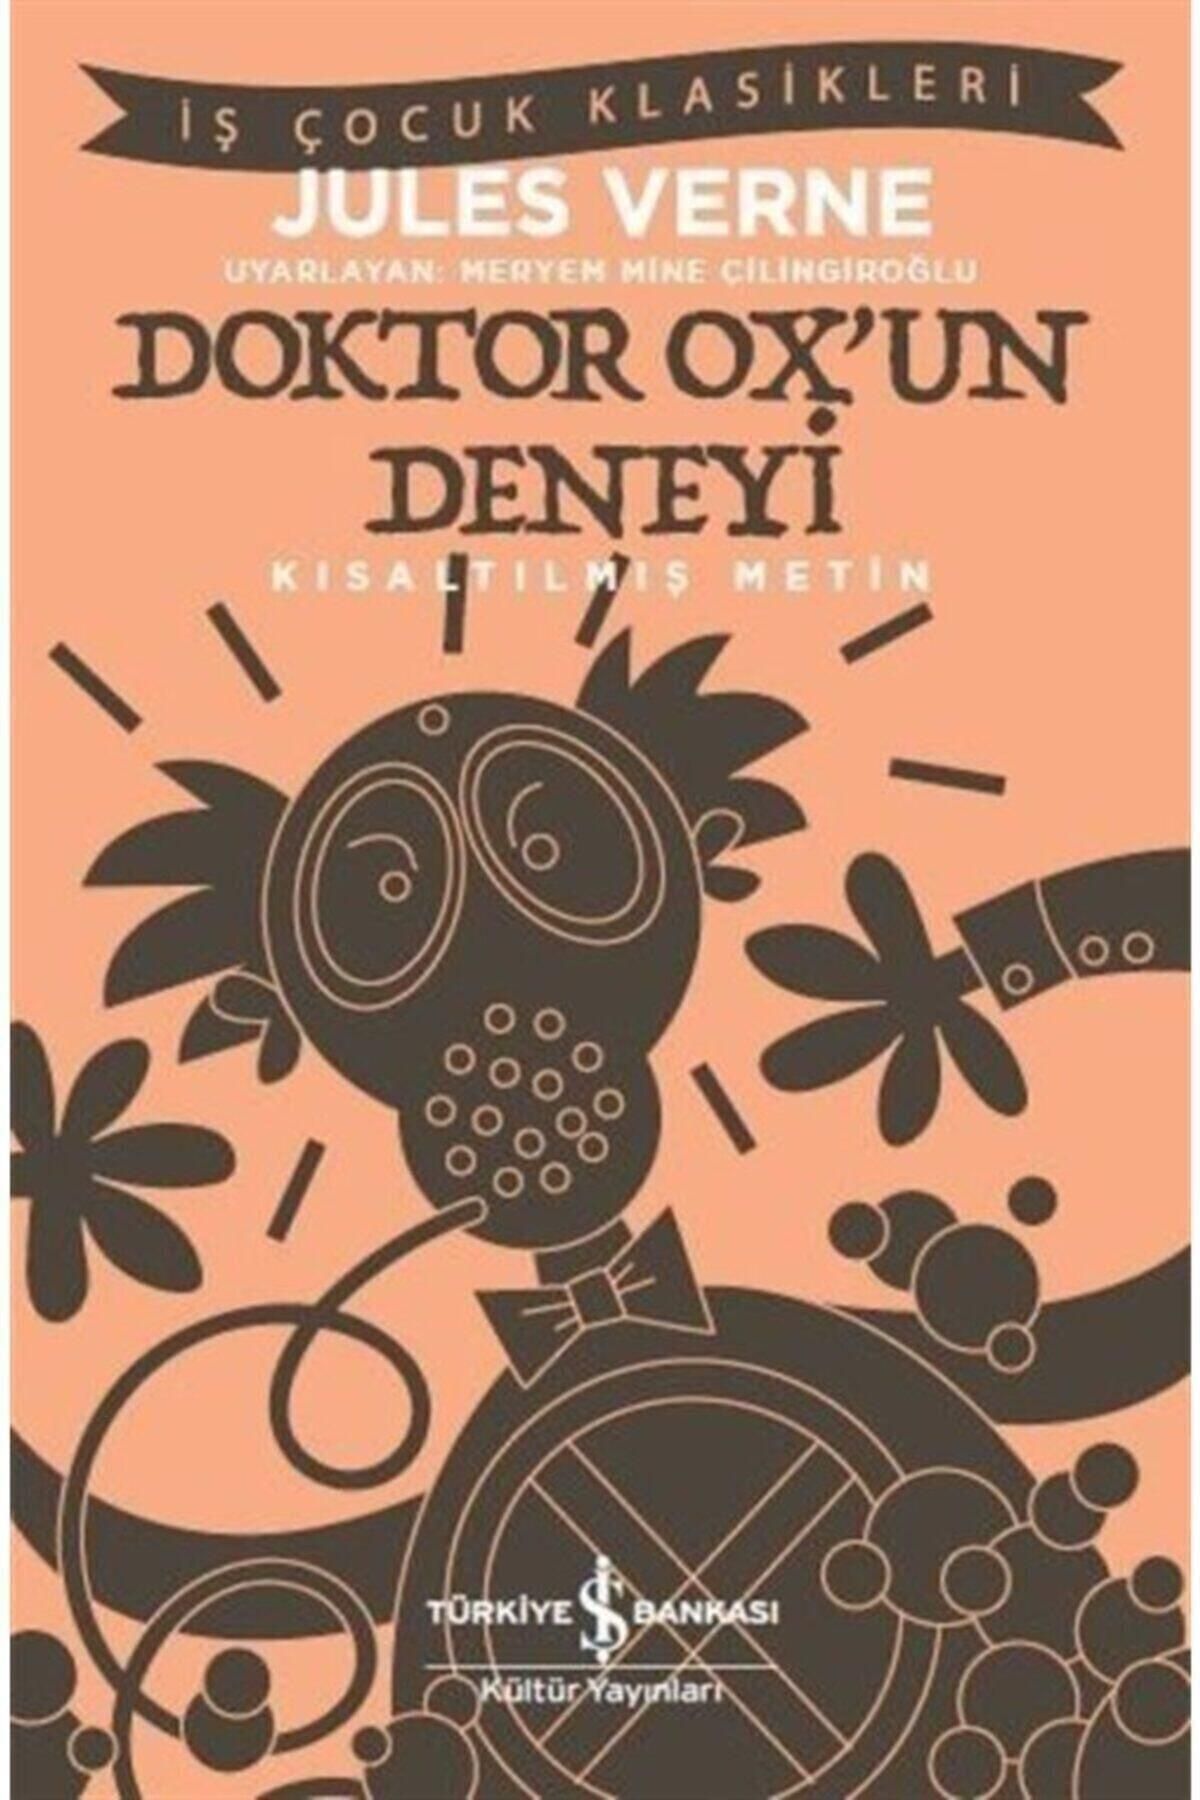 Türkiye İş Bankası Kültür Yayınları Doktor Ox'un Deneyi (KISALTILMIŞ METİN)